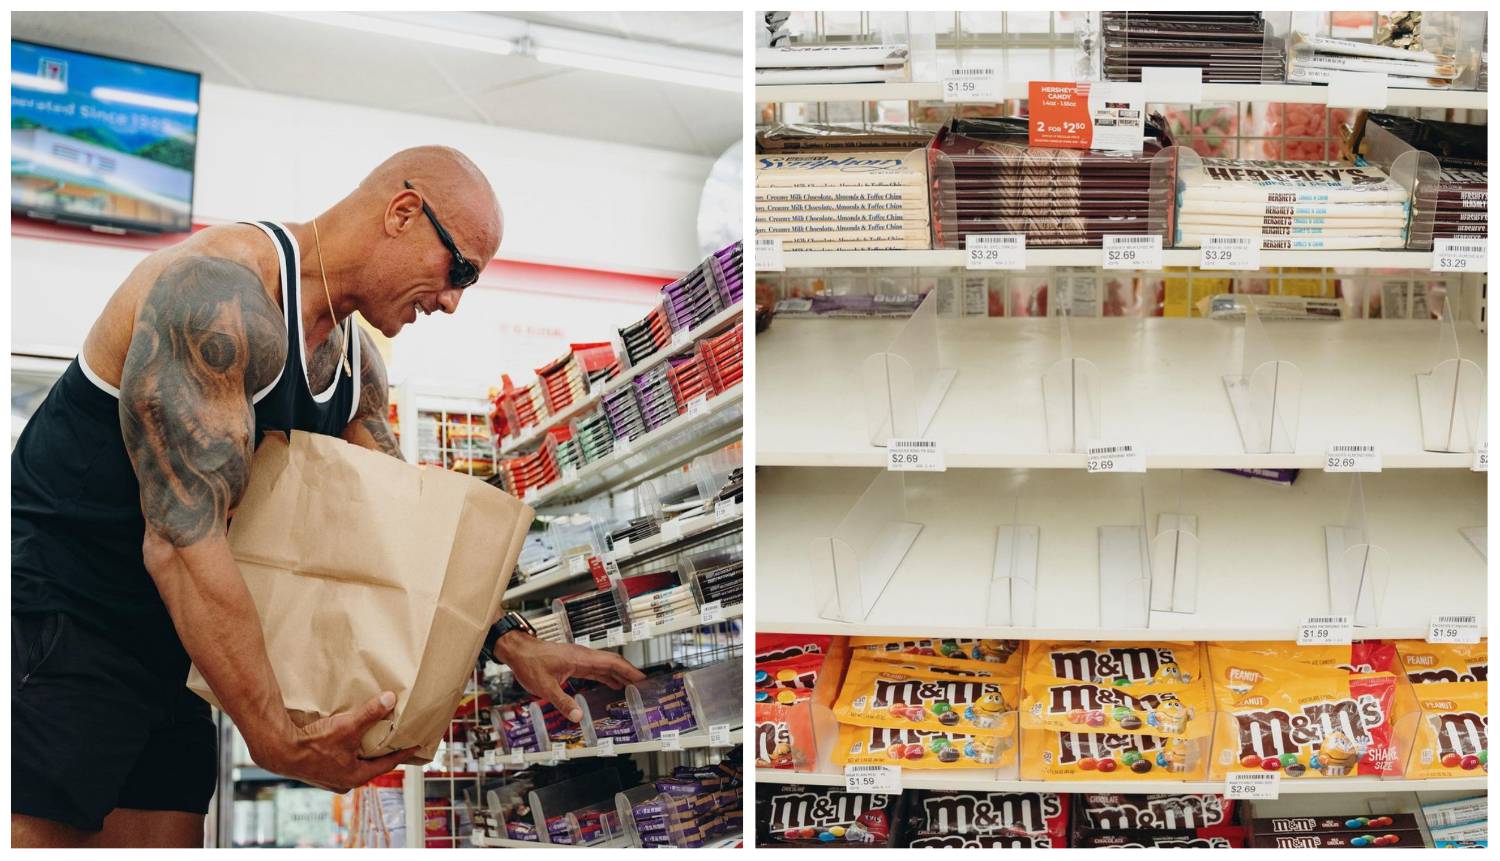 Dwayne Johnson kupio je sve čokoladice u dućanu: Krao sam, pogriješio sam, to me izjedalo